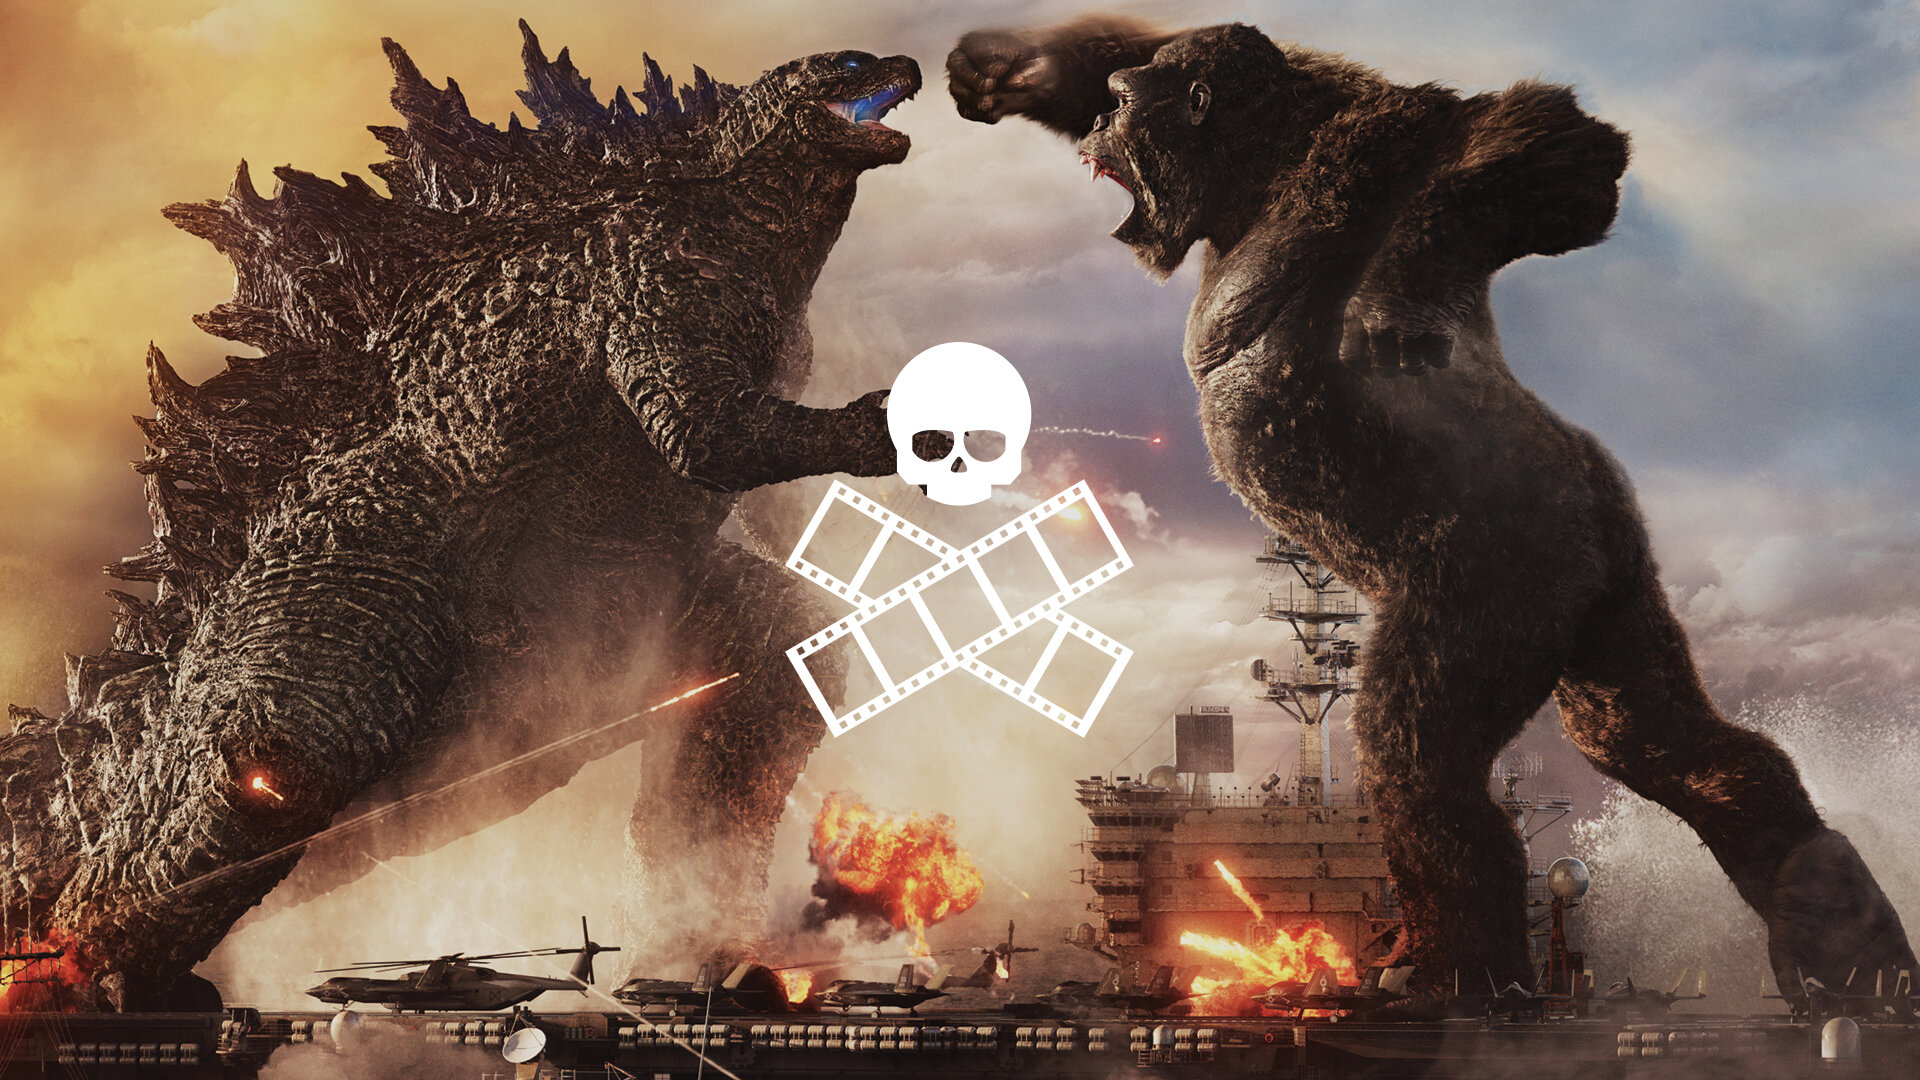 181. Godzilla vs Kong